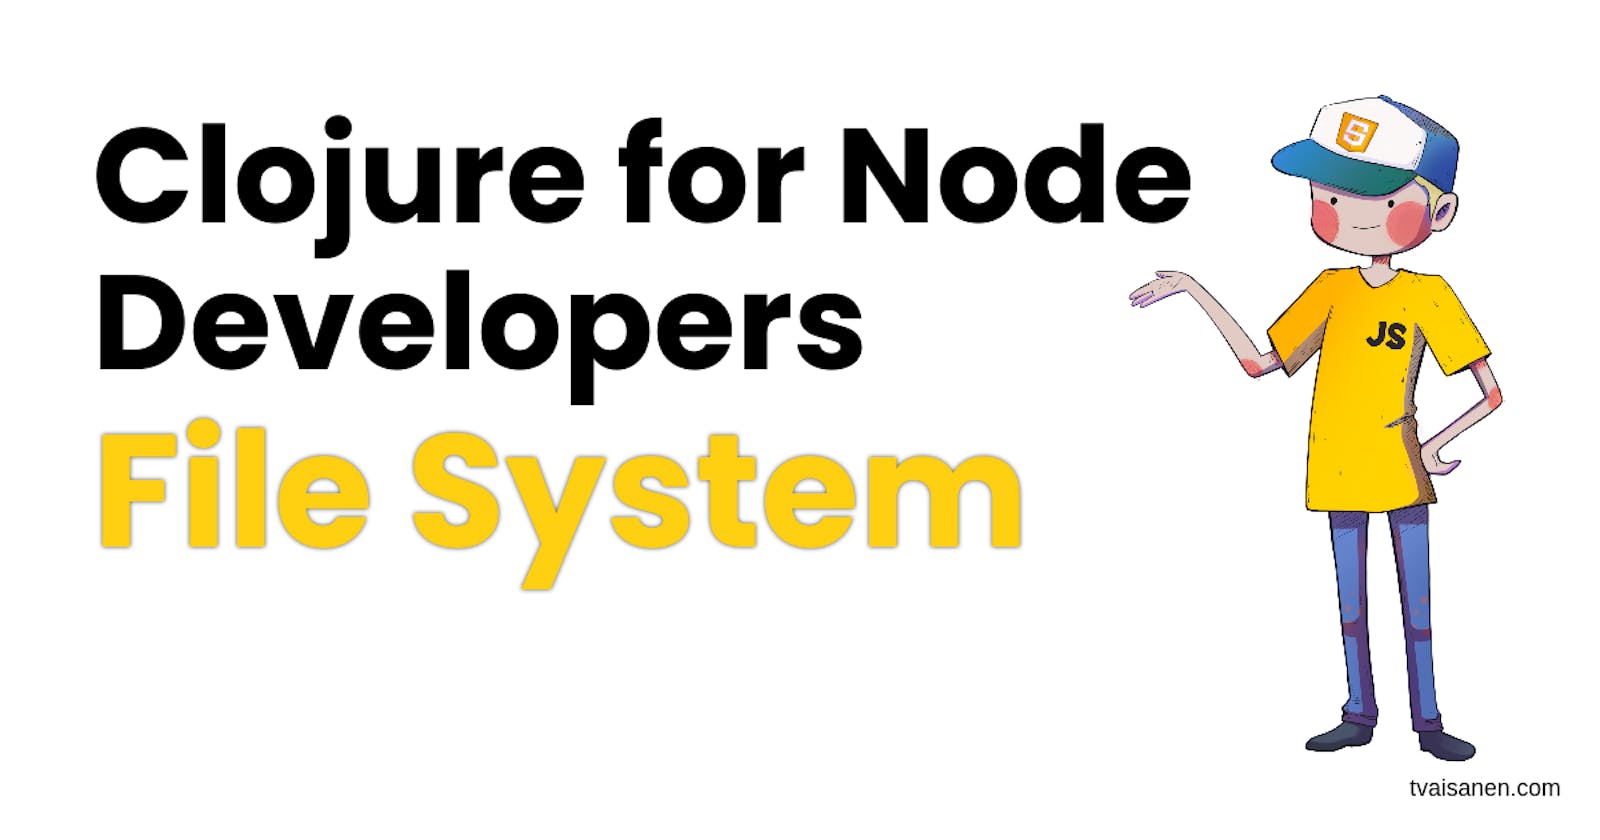 Clojure for Node Developers: File System